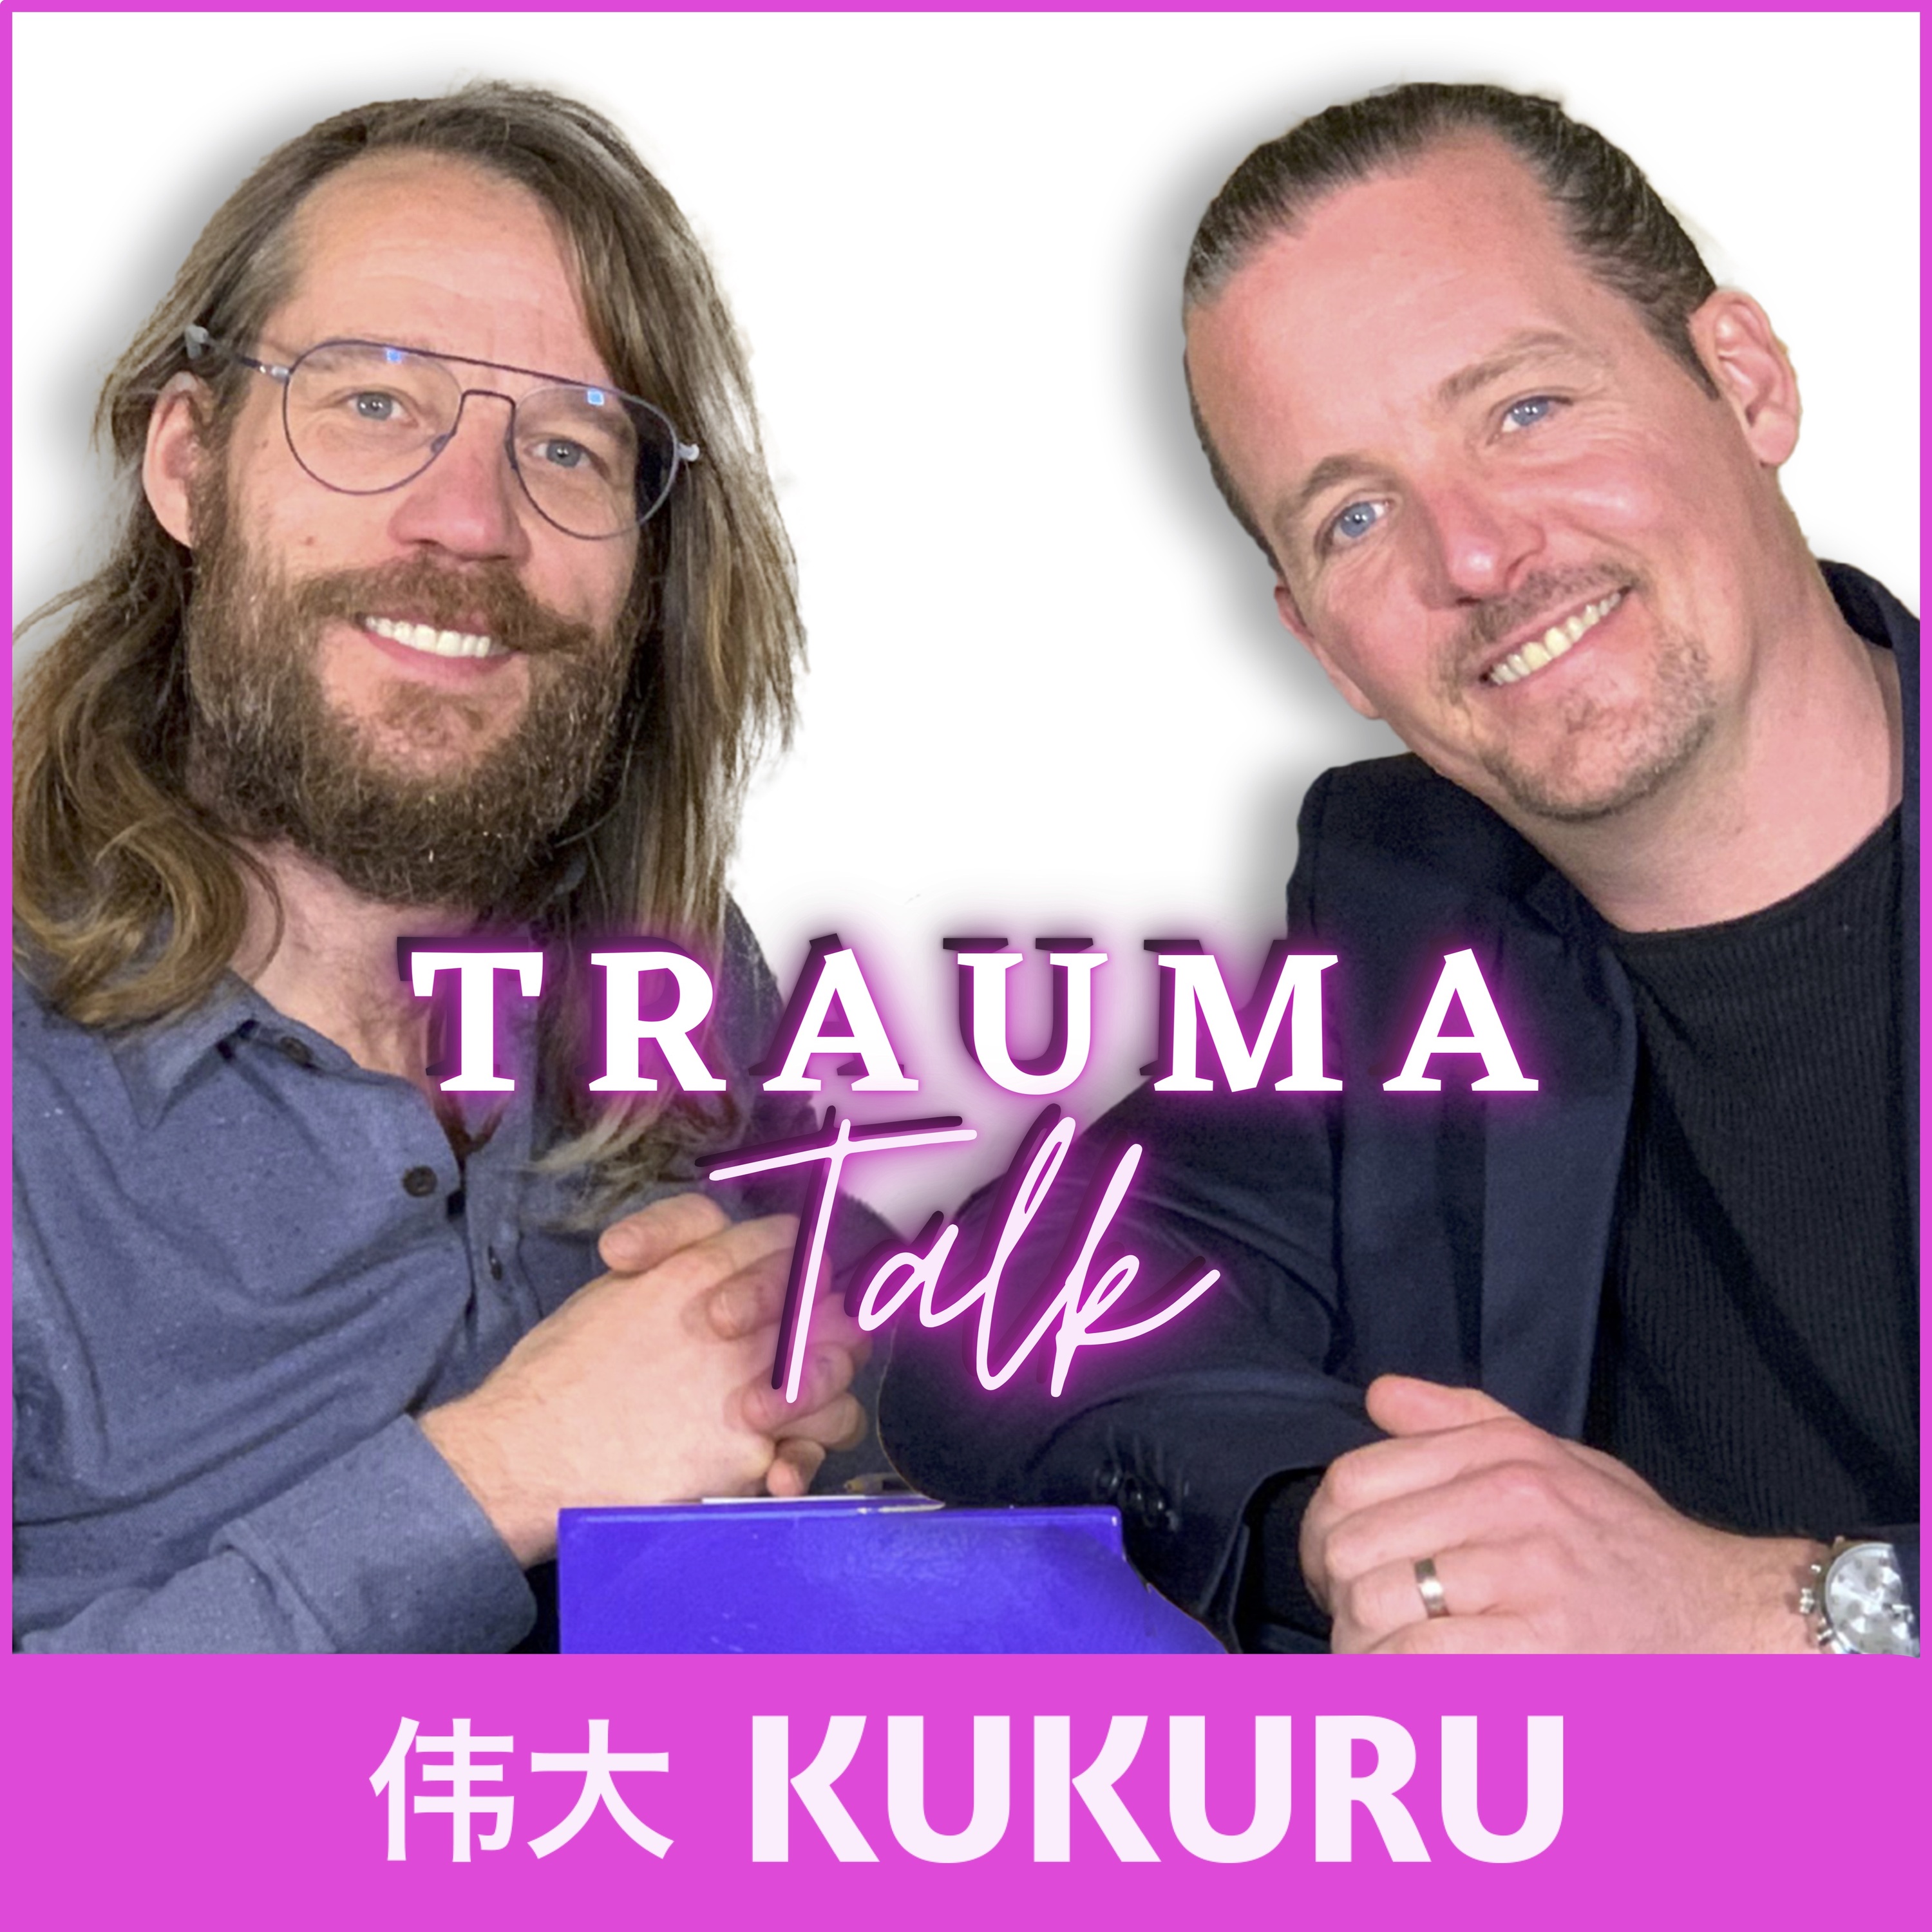 De gevolgen van trauma’s - Trauma Talk #2